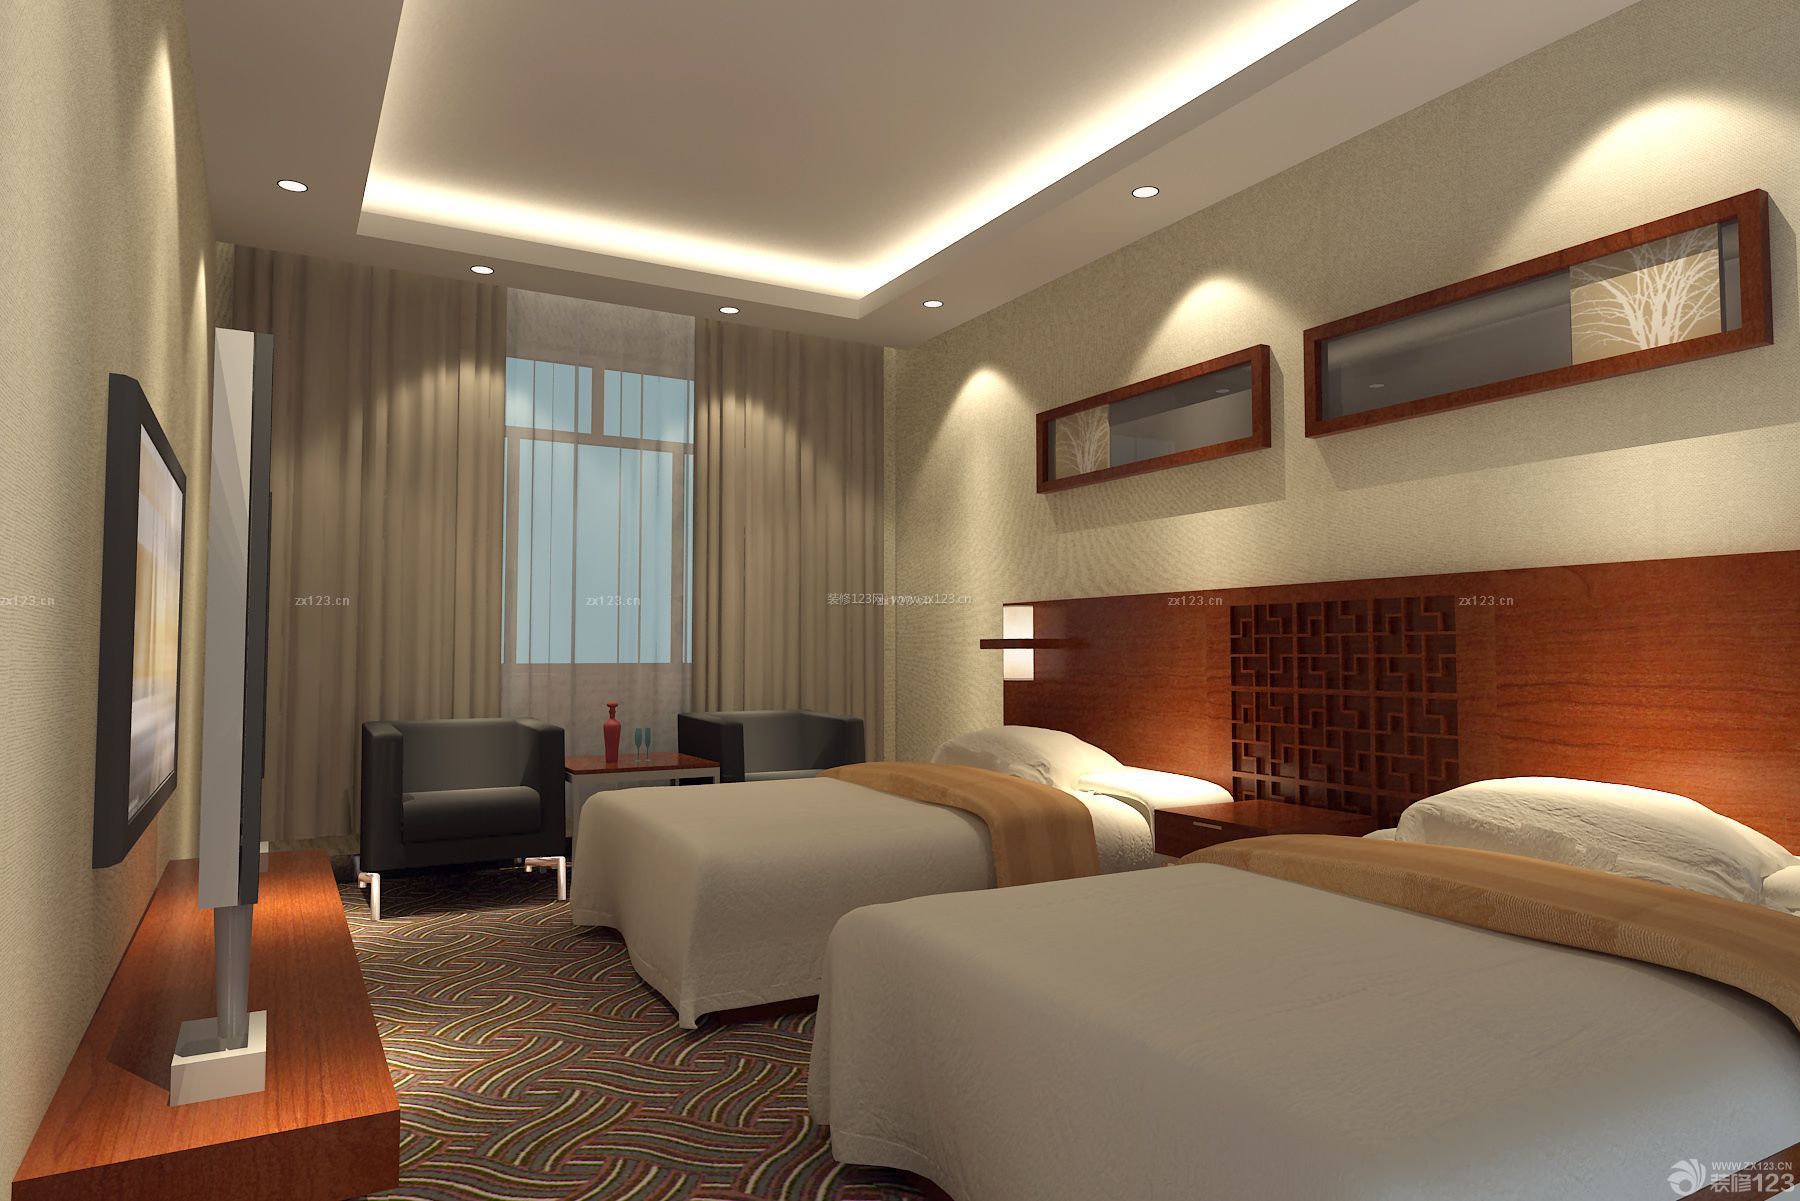 现代旅馆双人房间装修效果图